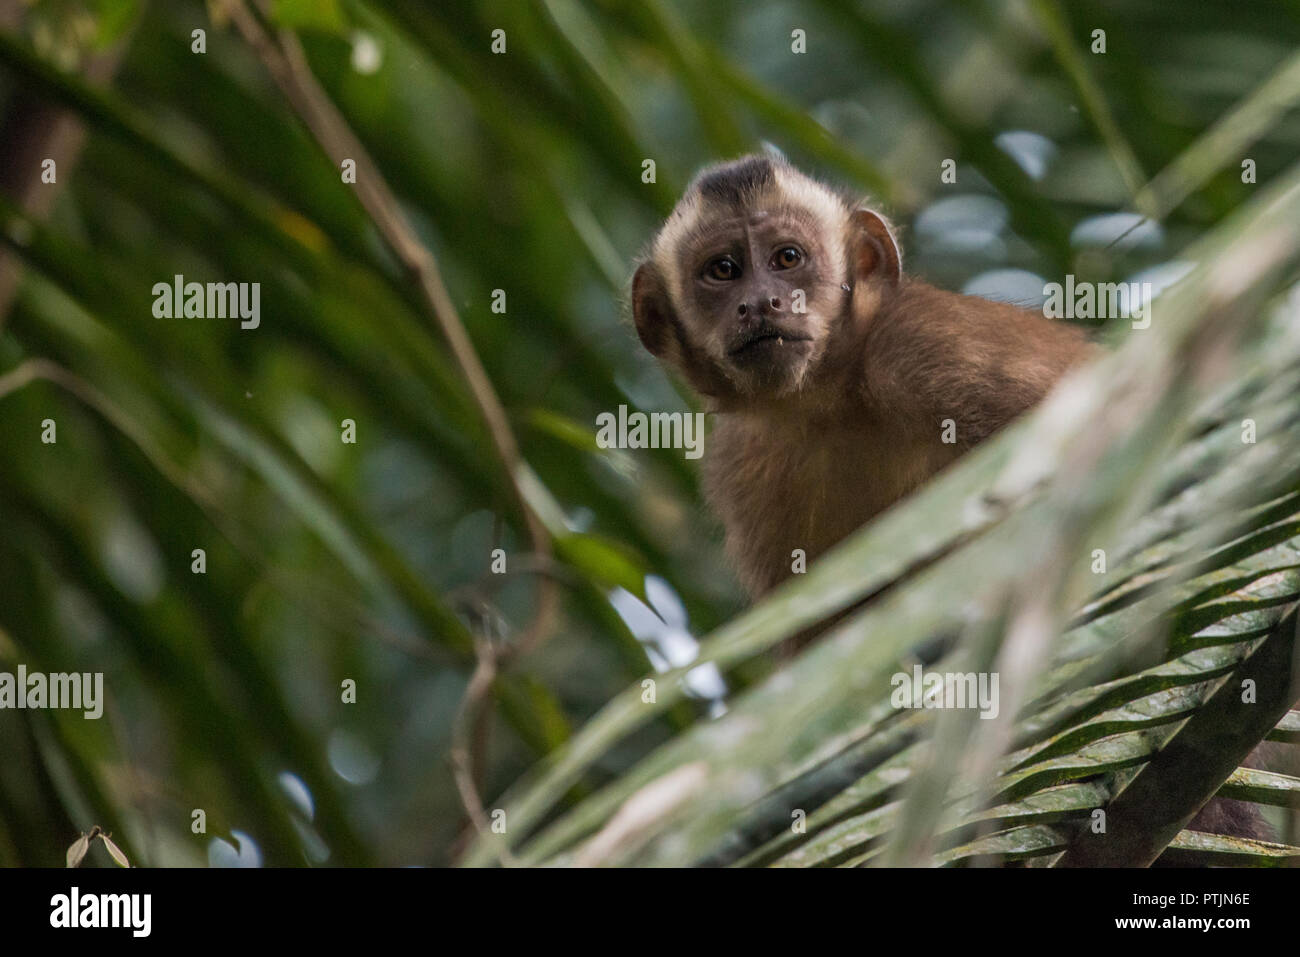 Tufted capuchino (Sapajus apella) anteriormente conocido como Cebus apella mirando al fotógrafo en la selva amazónica. Foto de stock